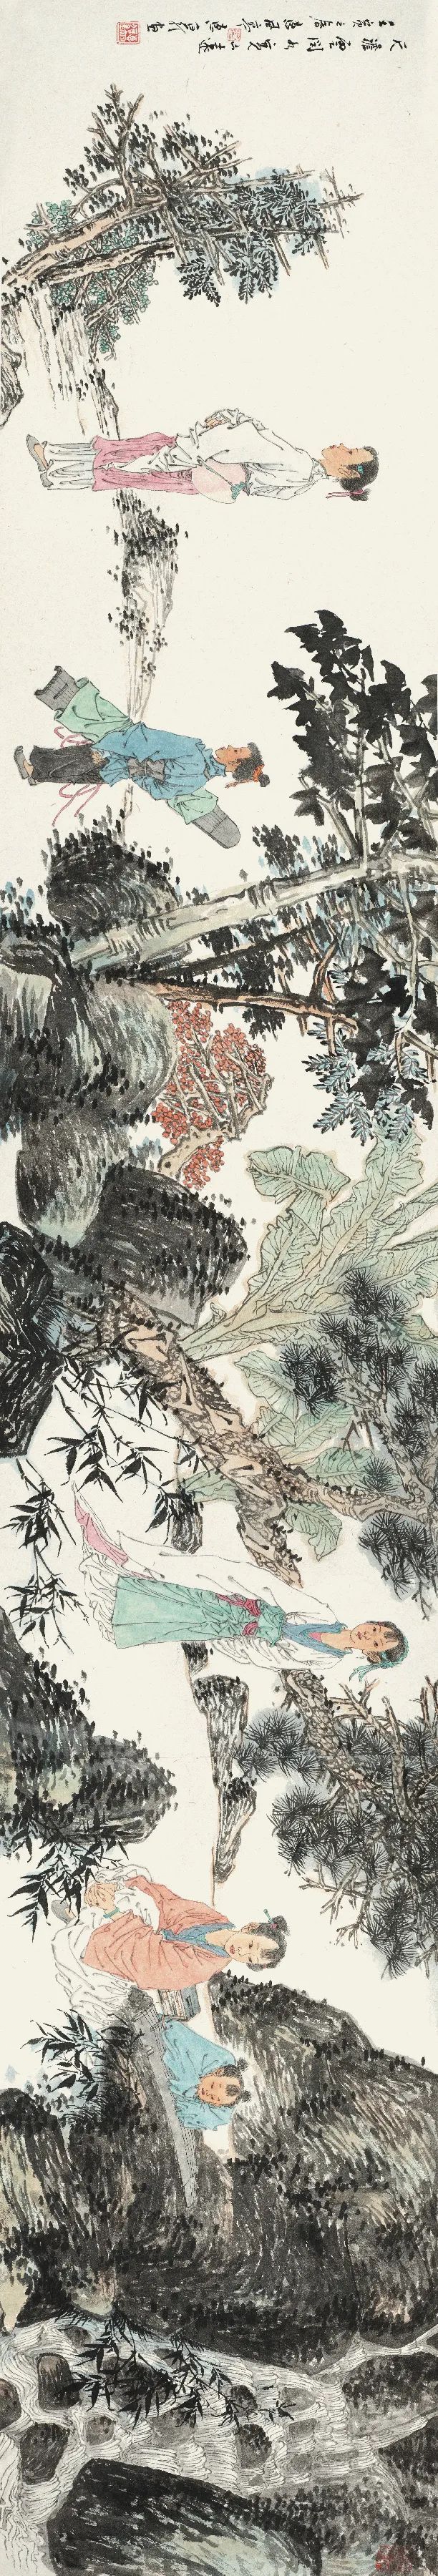 徐惠泉和他的“艺术空间”：画落“归根”绘时代 玲珑苏州总是美